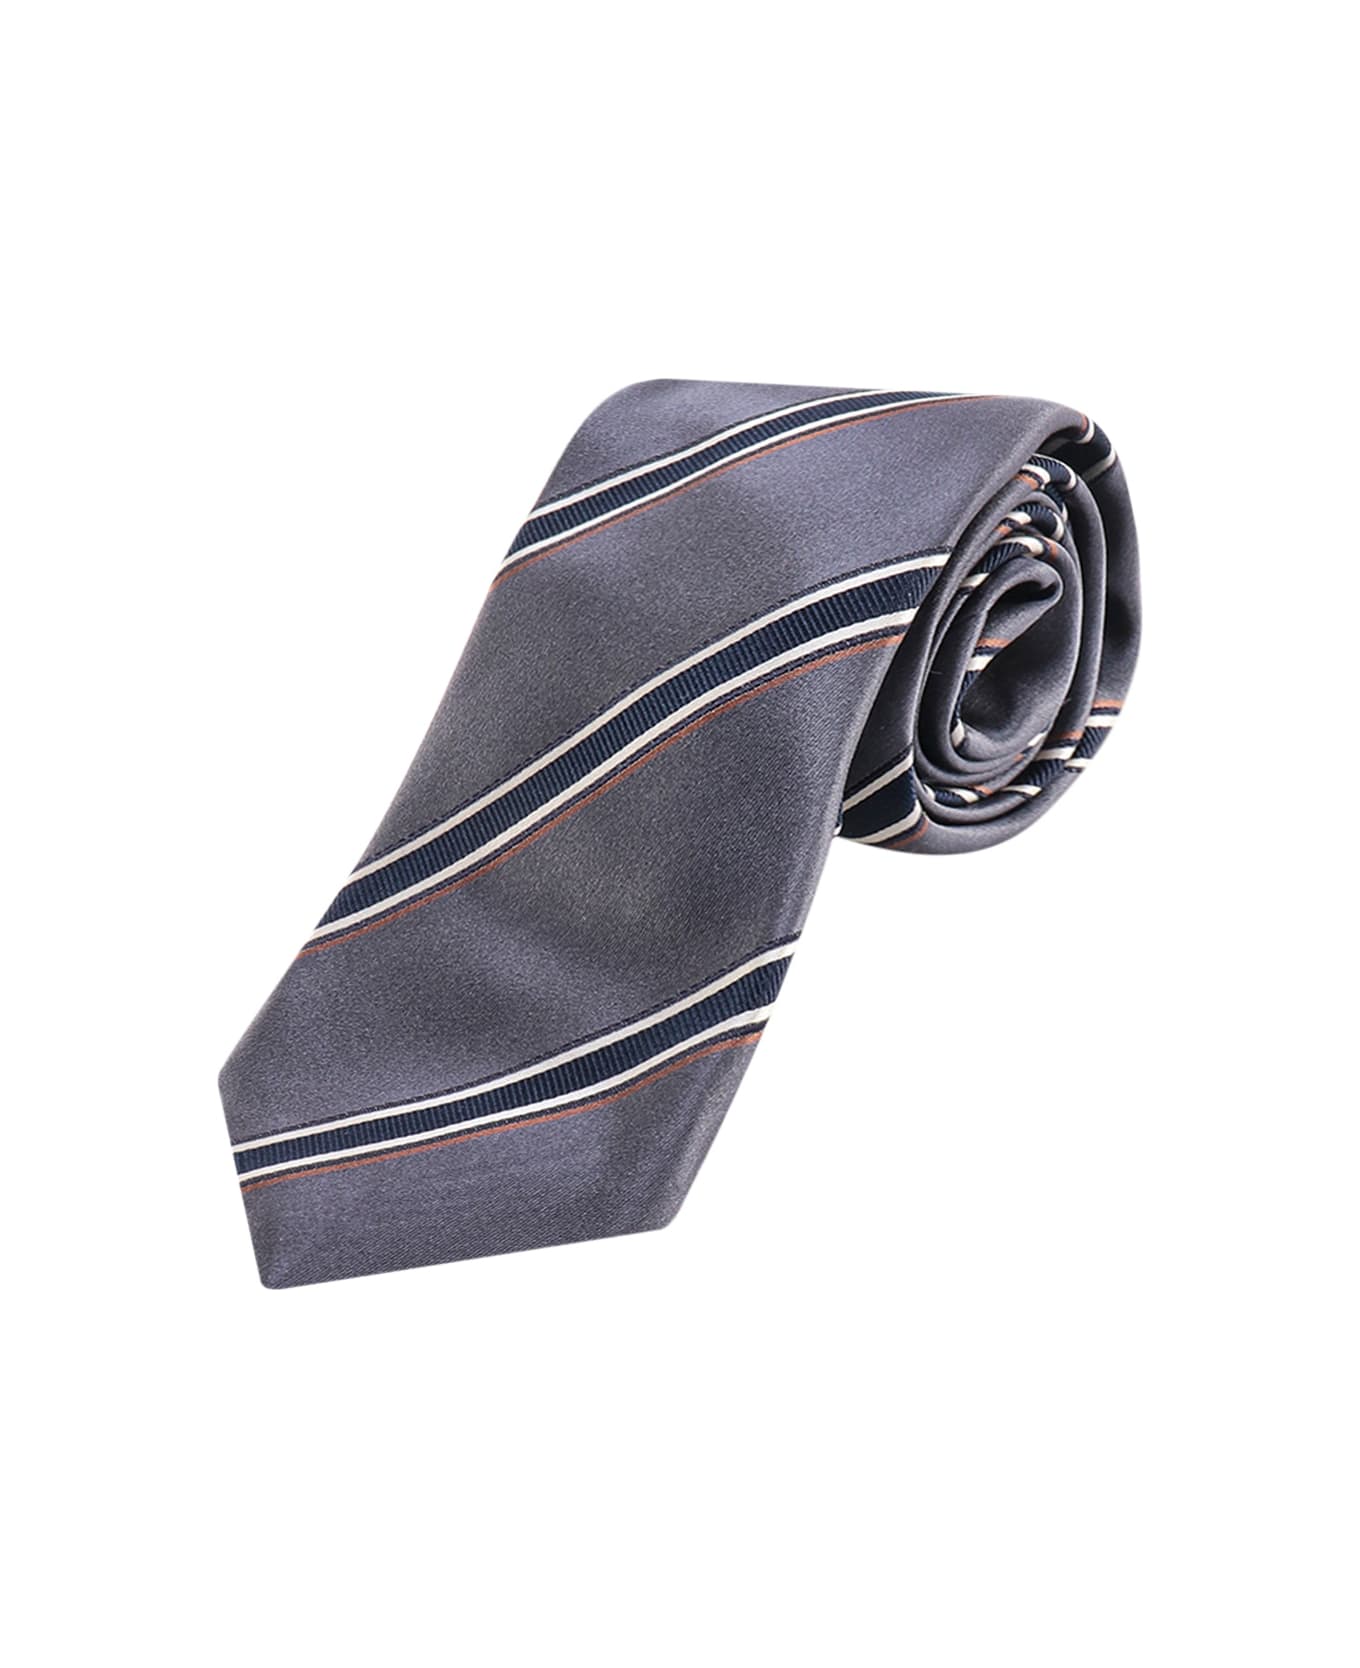 Brunello Cucinelli Multicolor Striped Tie - Blue ネクタイ